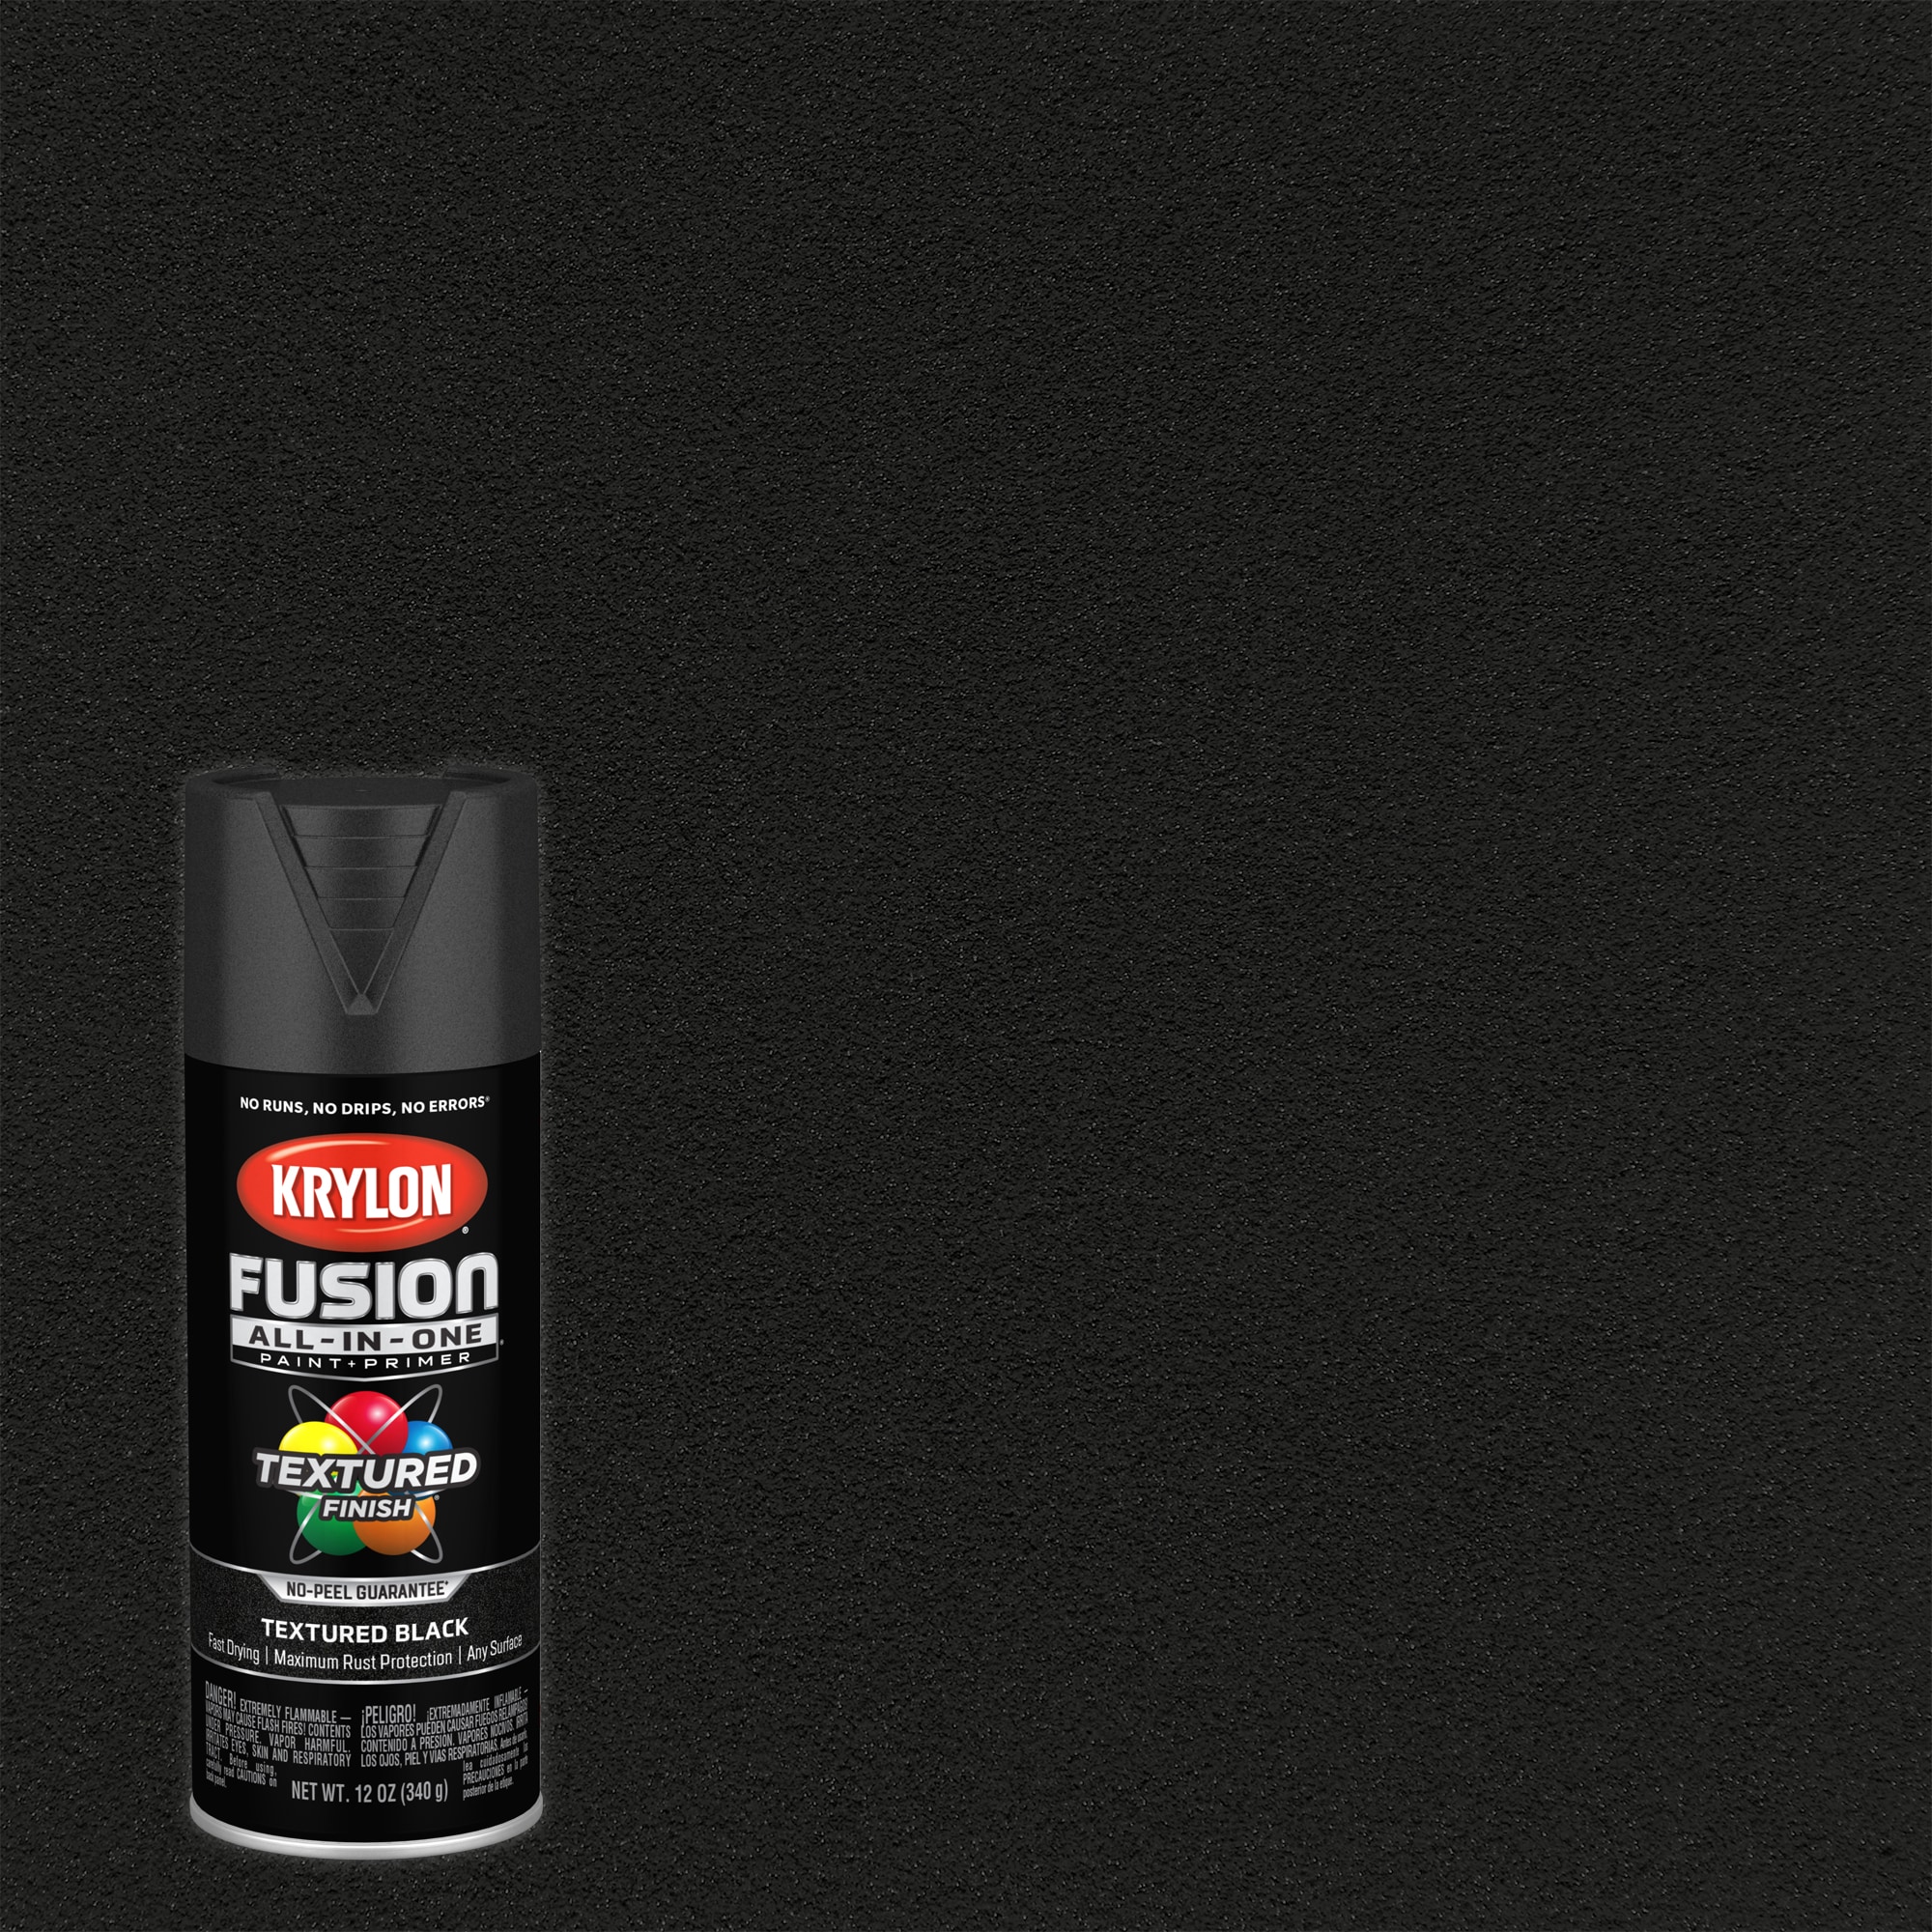 ColorBond LVP Plus Carpet Spray Paint 12 oz.